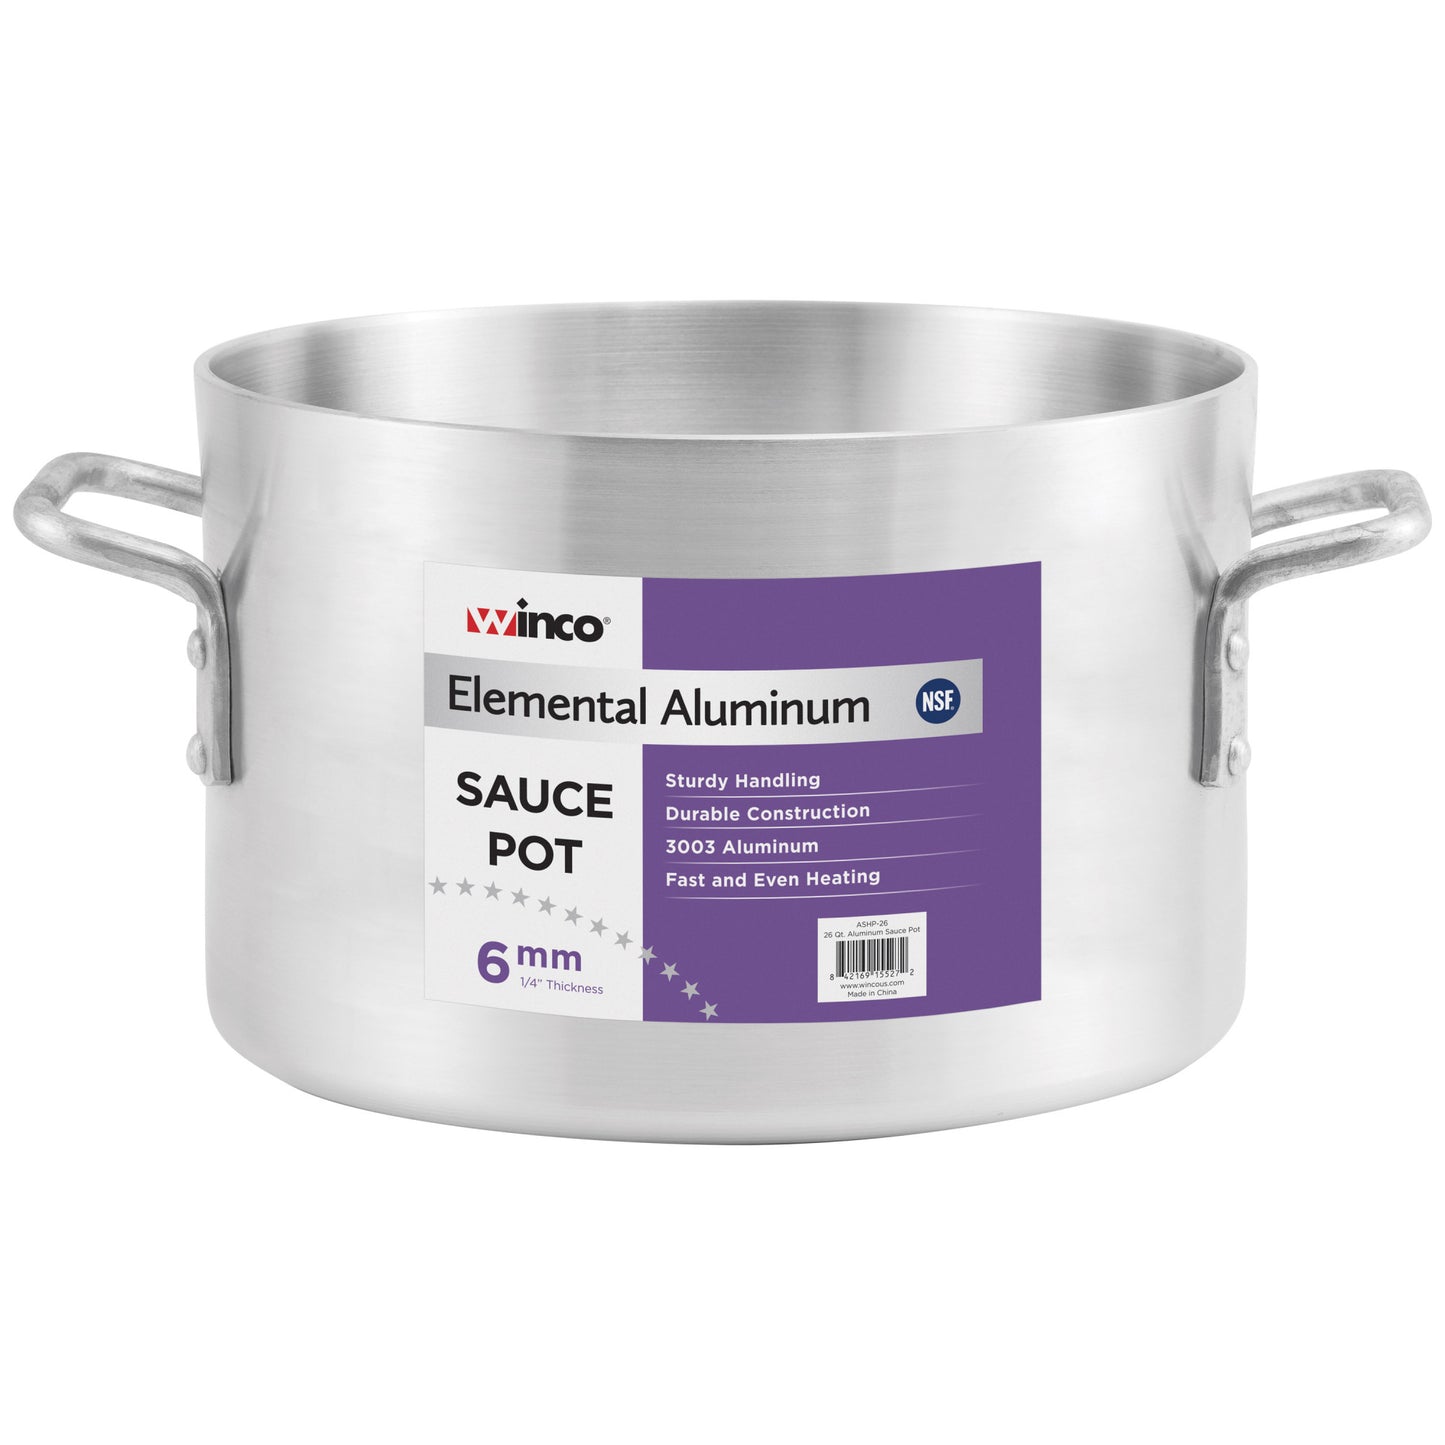 ASHP-14 - Elemental Aluminum Sauce Pot, 6mm - 14 Quart